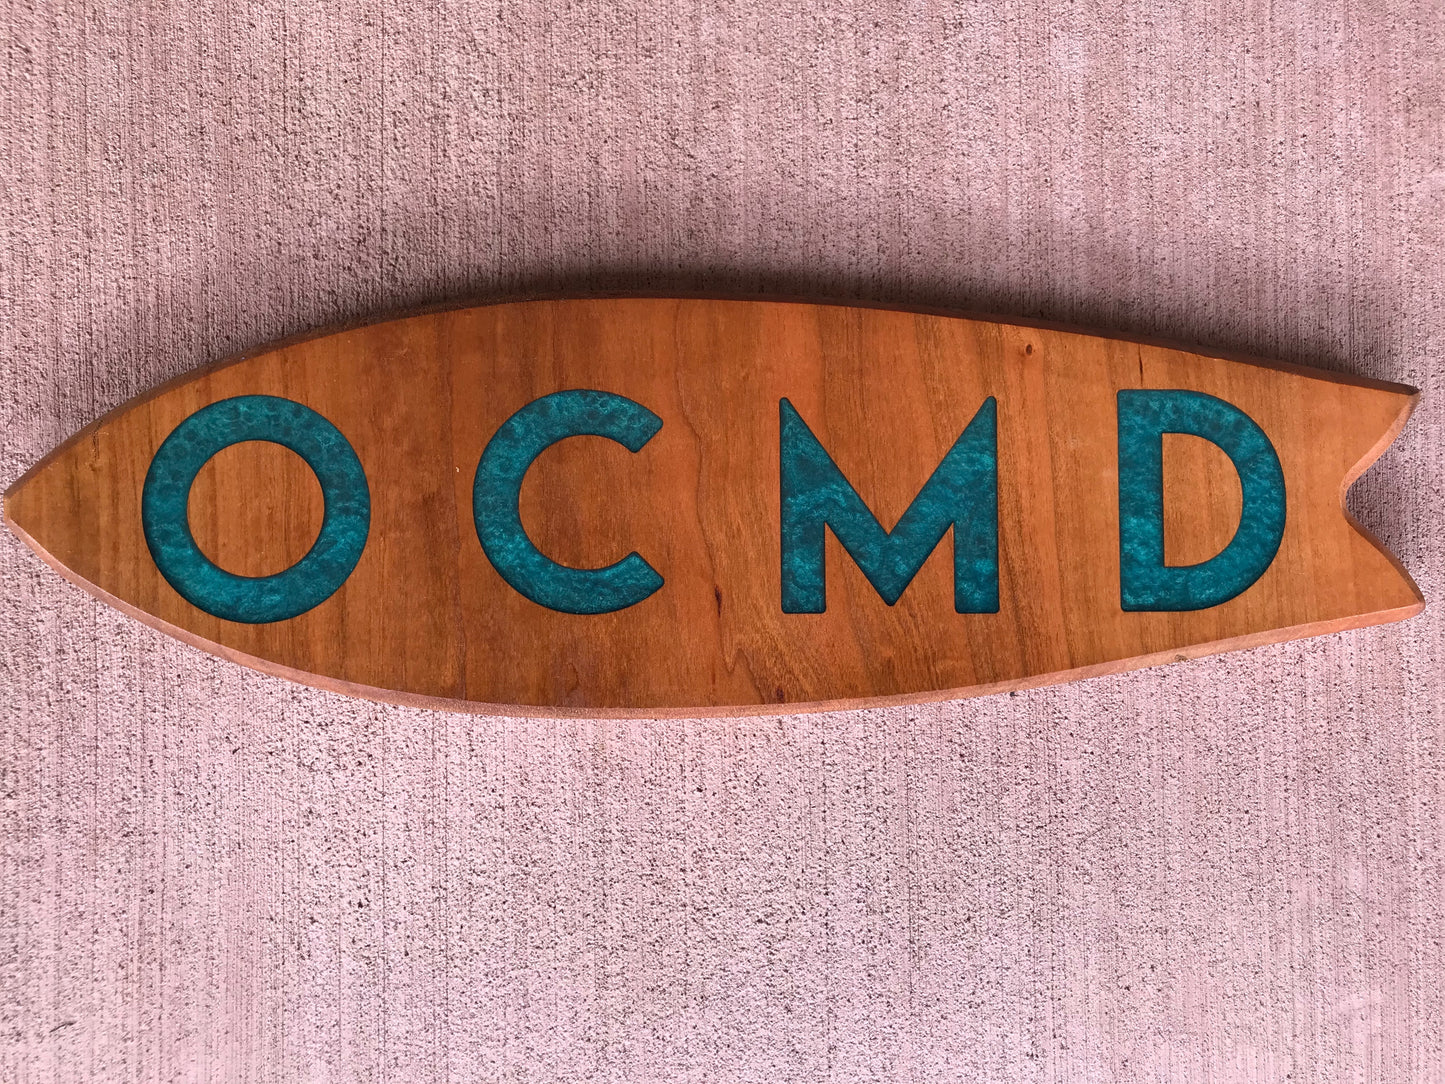 OCMD Surf - Thread & Resin